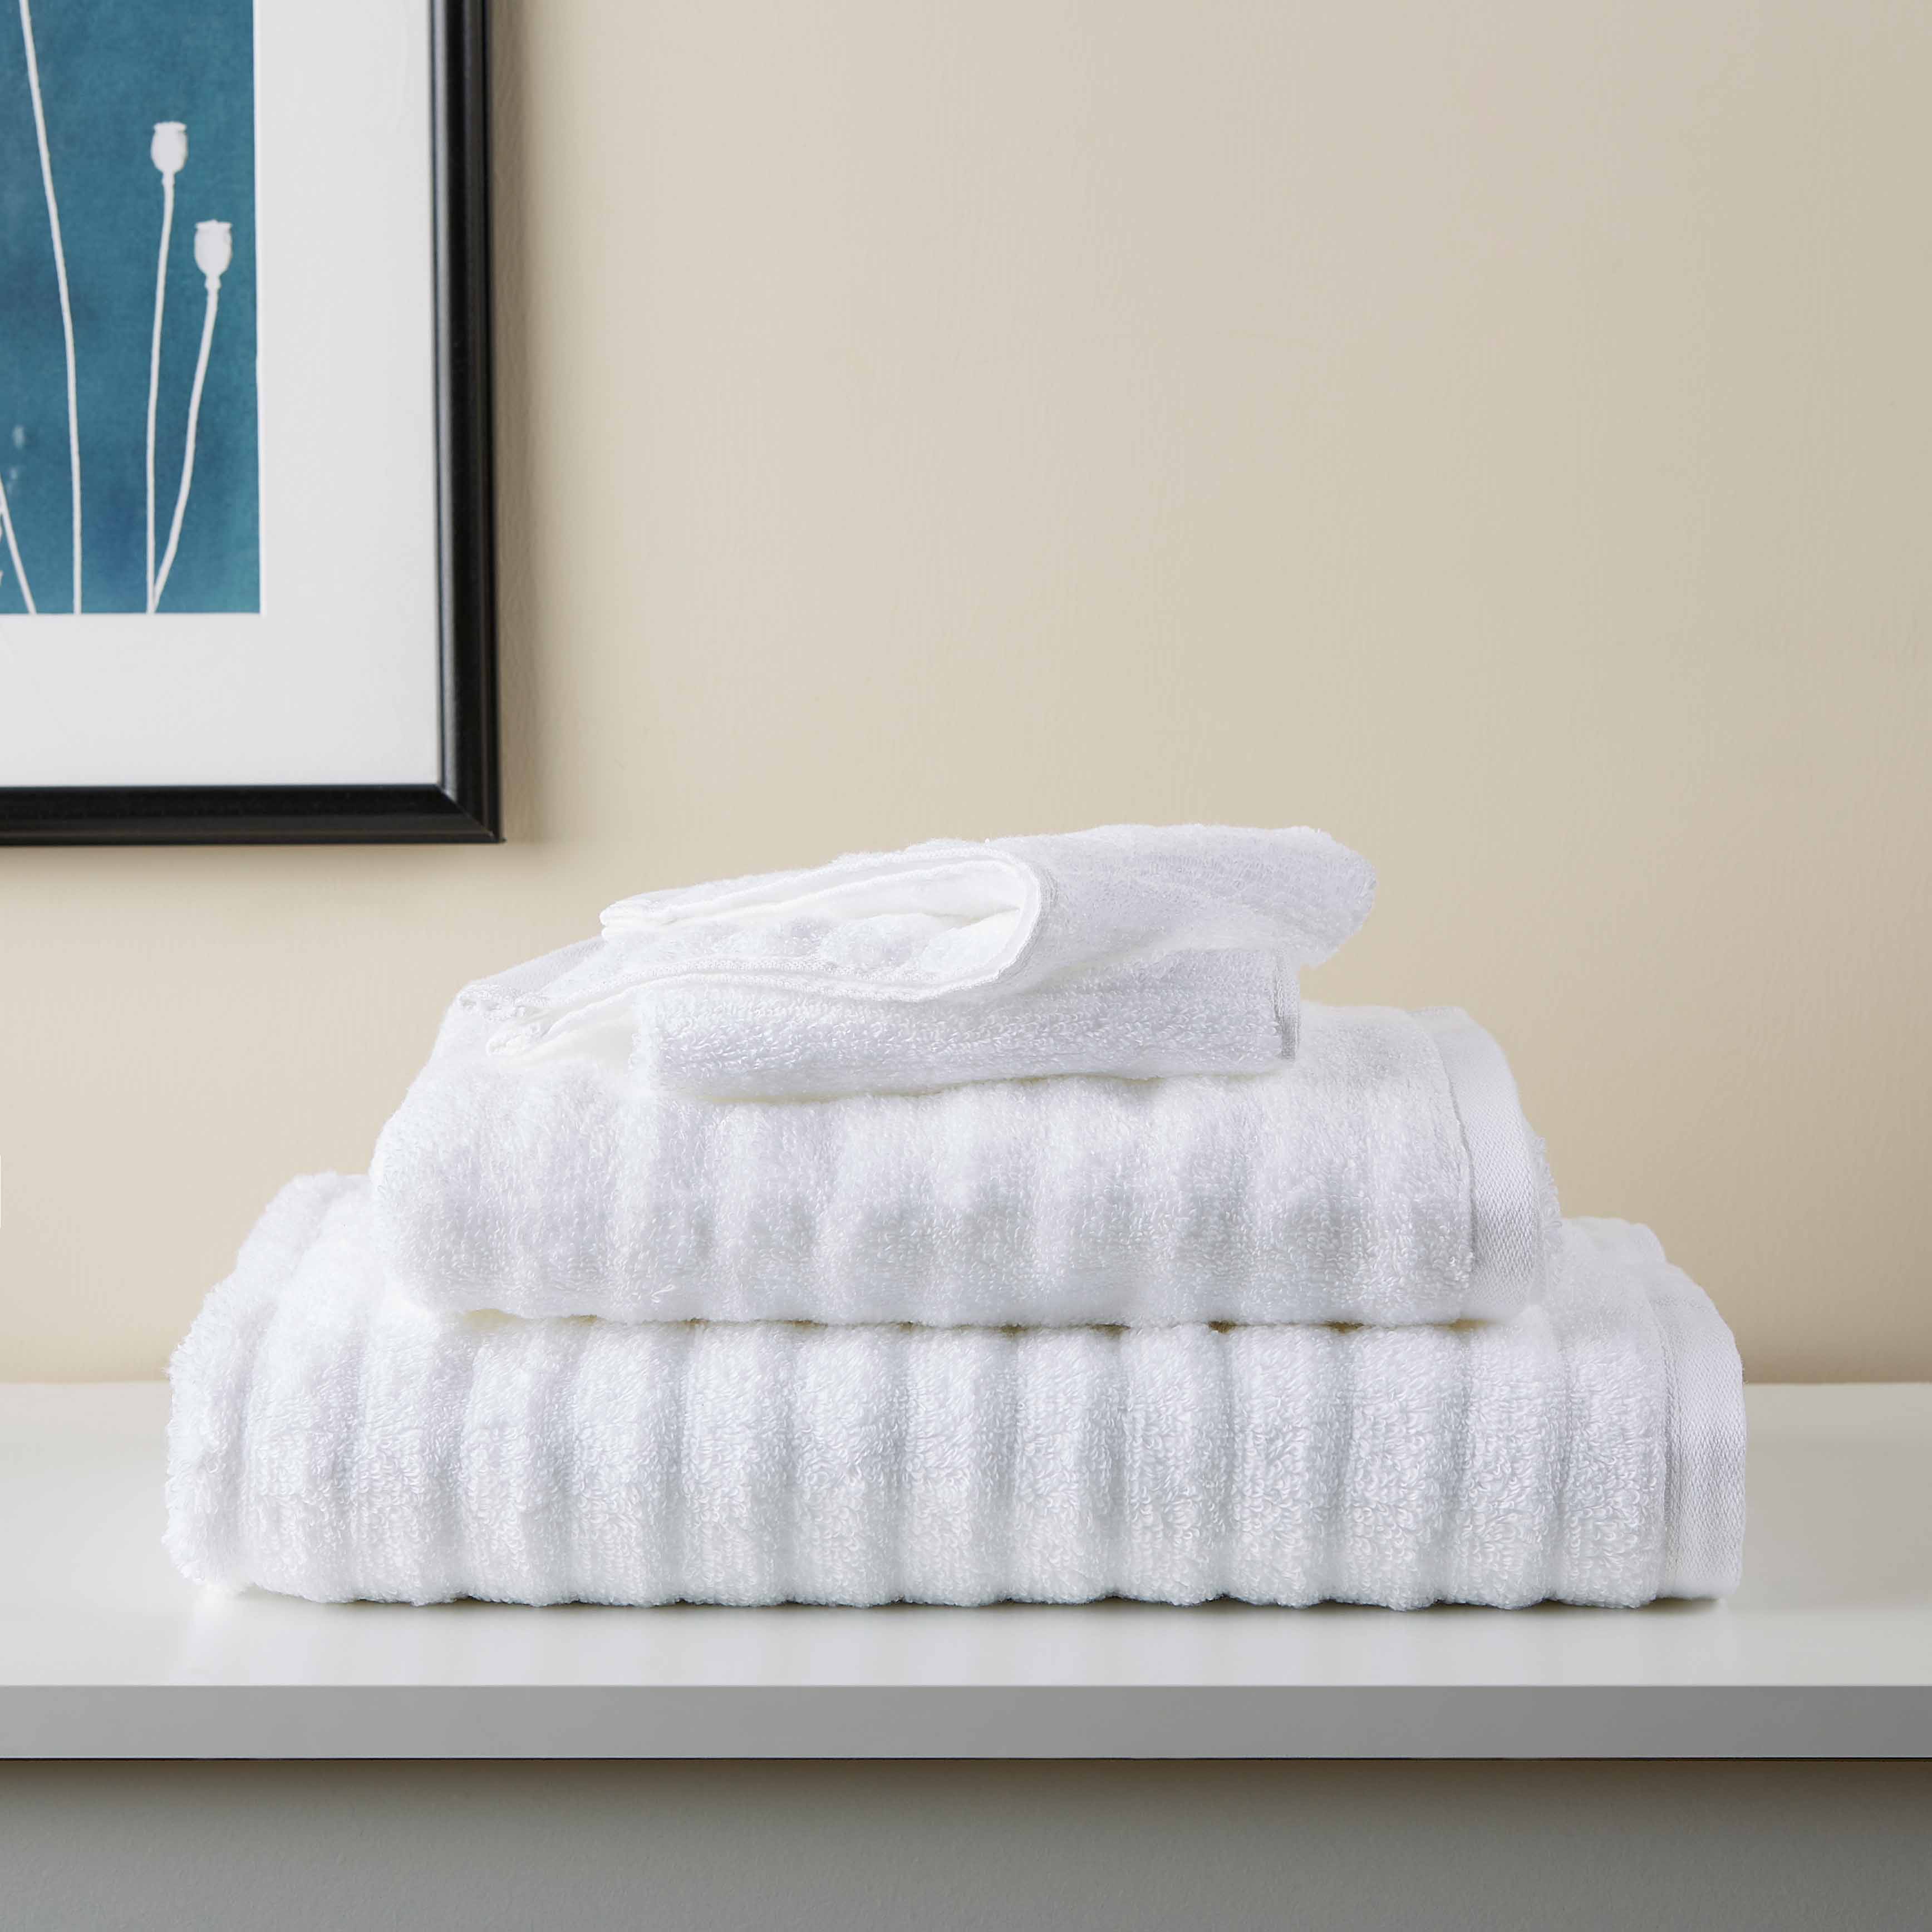 Mainstays 6 Piece Textures Cotton Bath Towel Set,  White - image 1 of 6